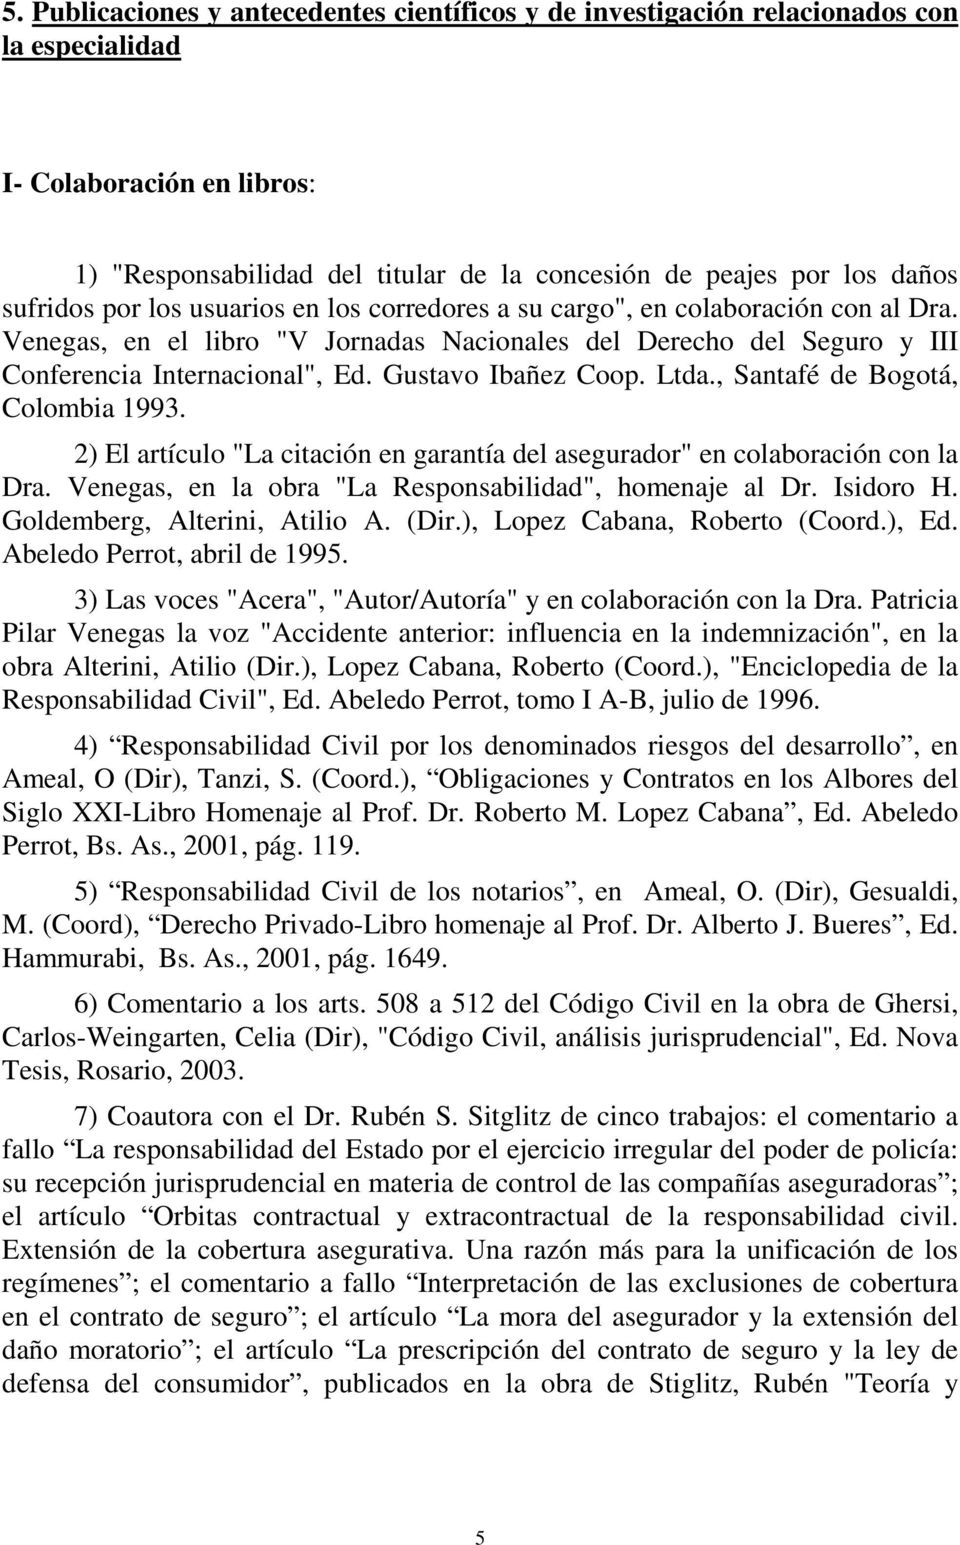 Gustavo Ibañez Coop. Ltda., Santafé de Bogotá, Colombia 1993. 2) El artículo "La citación en garantía del asegurador" en colaboración con la Dra.